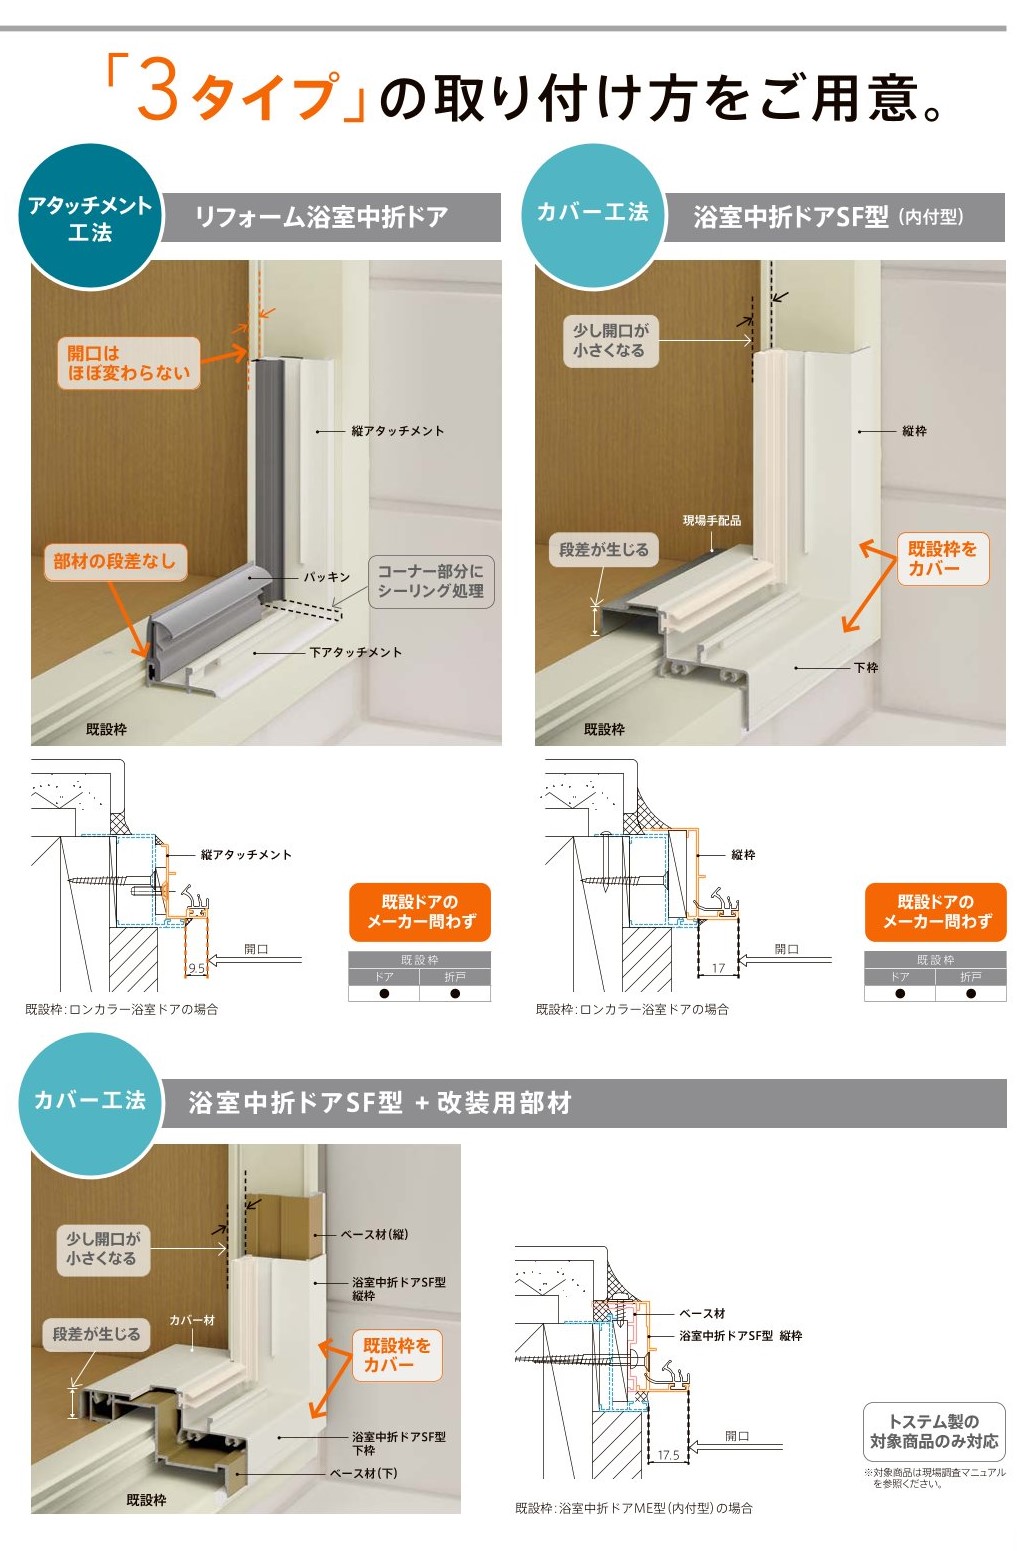 江﨑の【出水市】シャワー室出入口取替えの施工事例詳細写真1